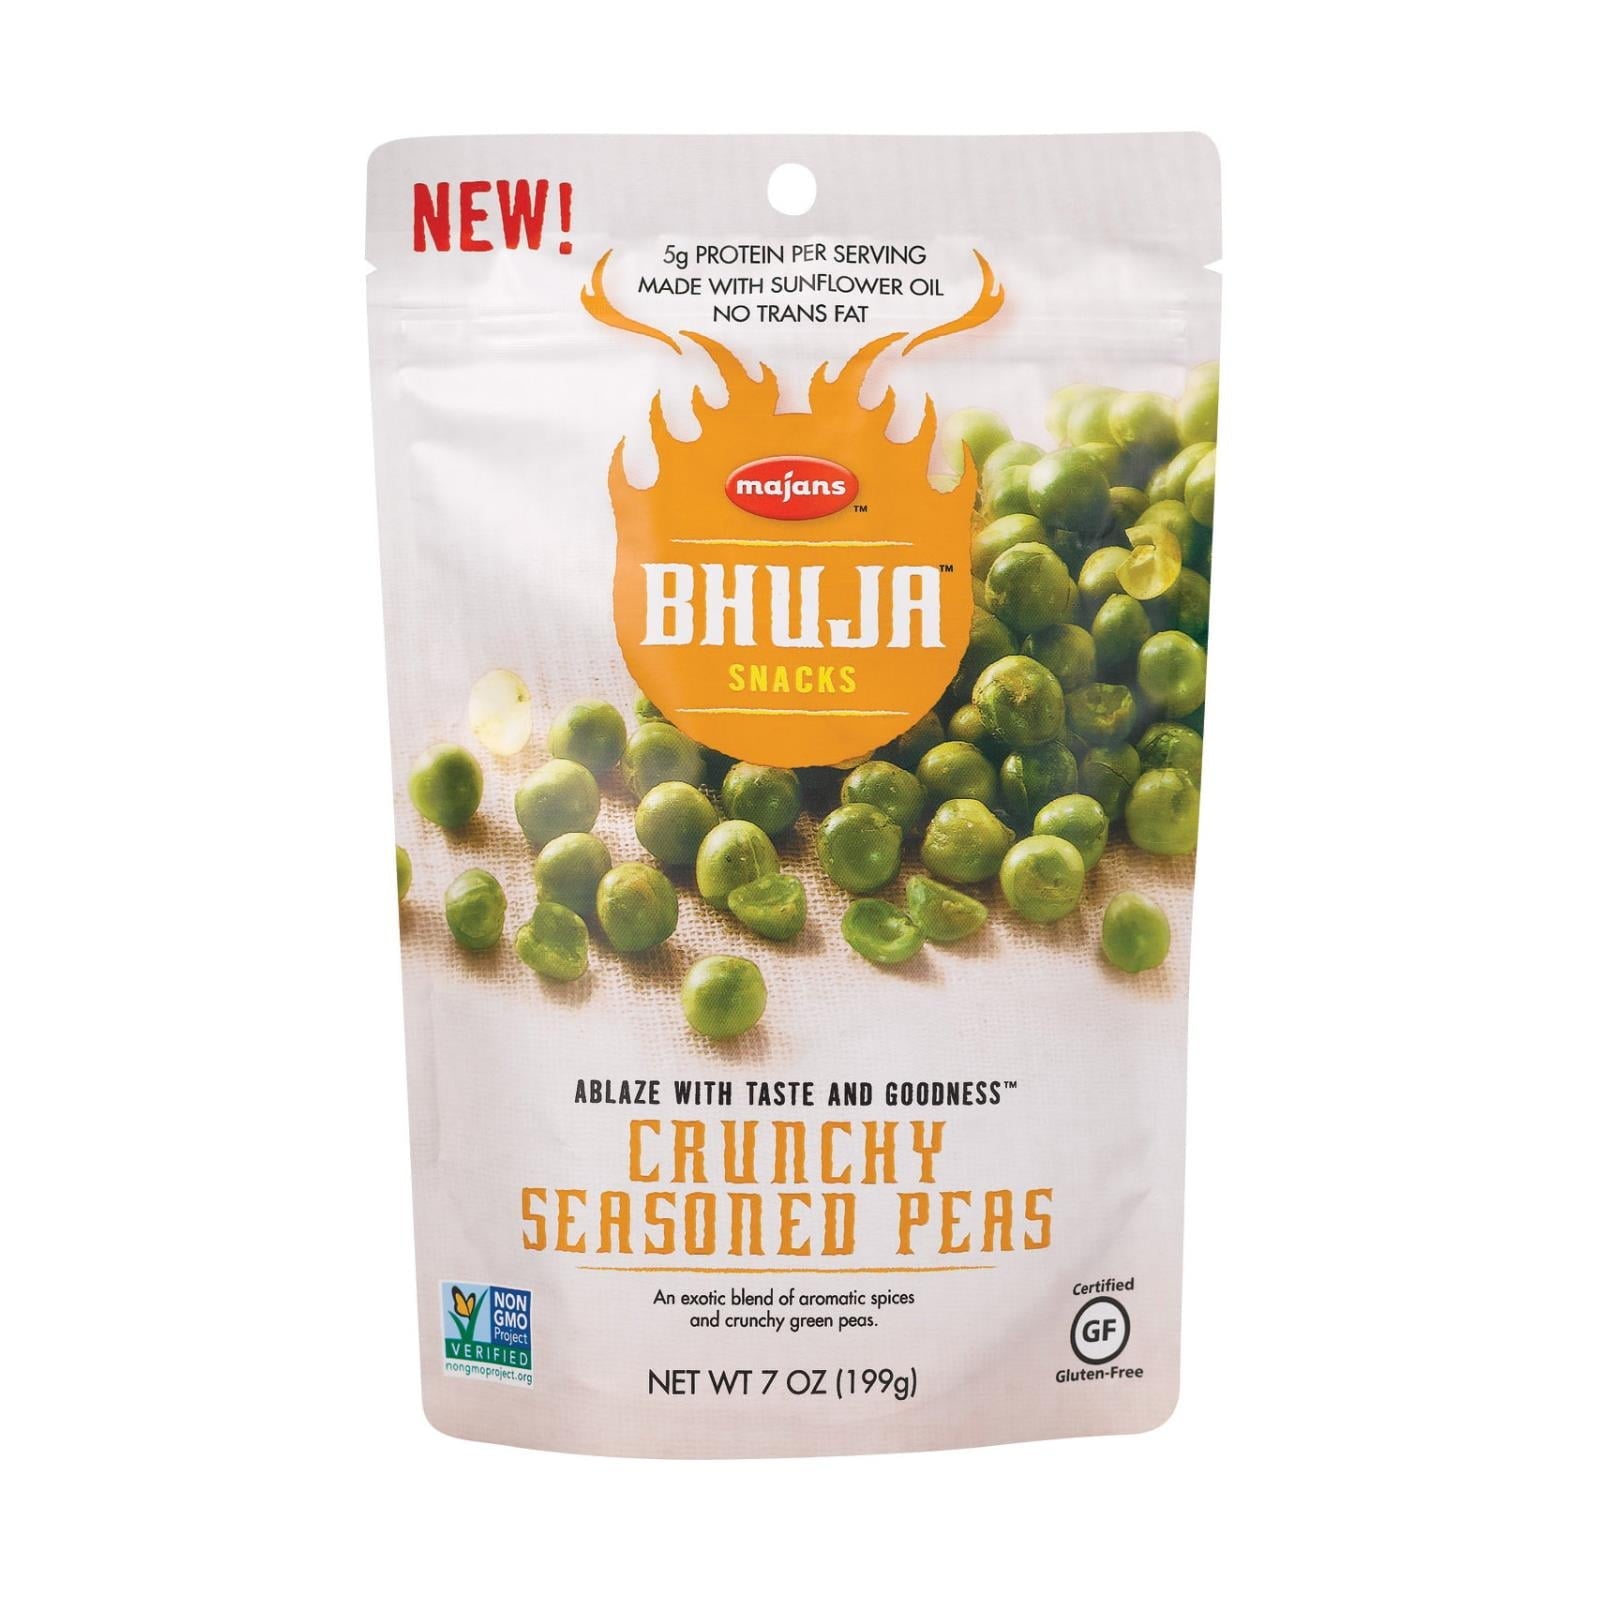 Bhuja Seasoned Crunchy Peas 7 oz Bag